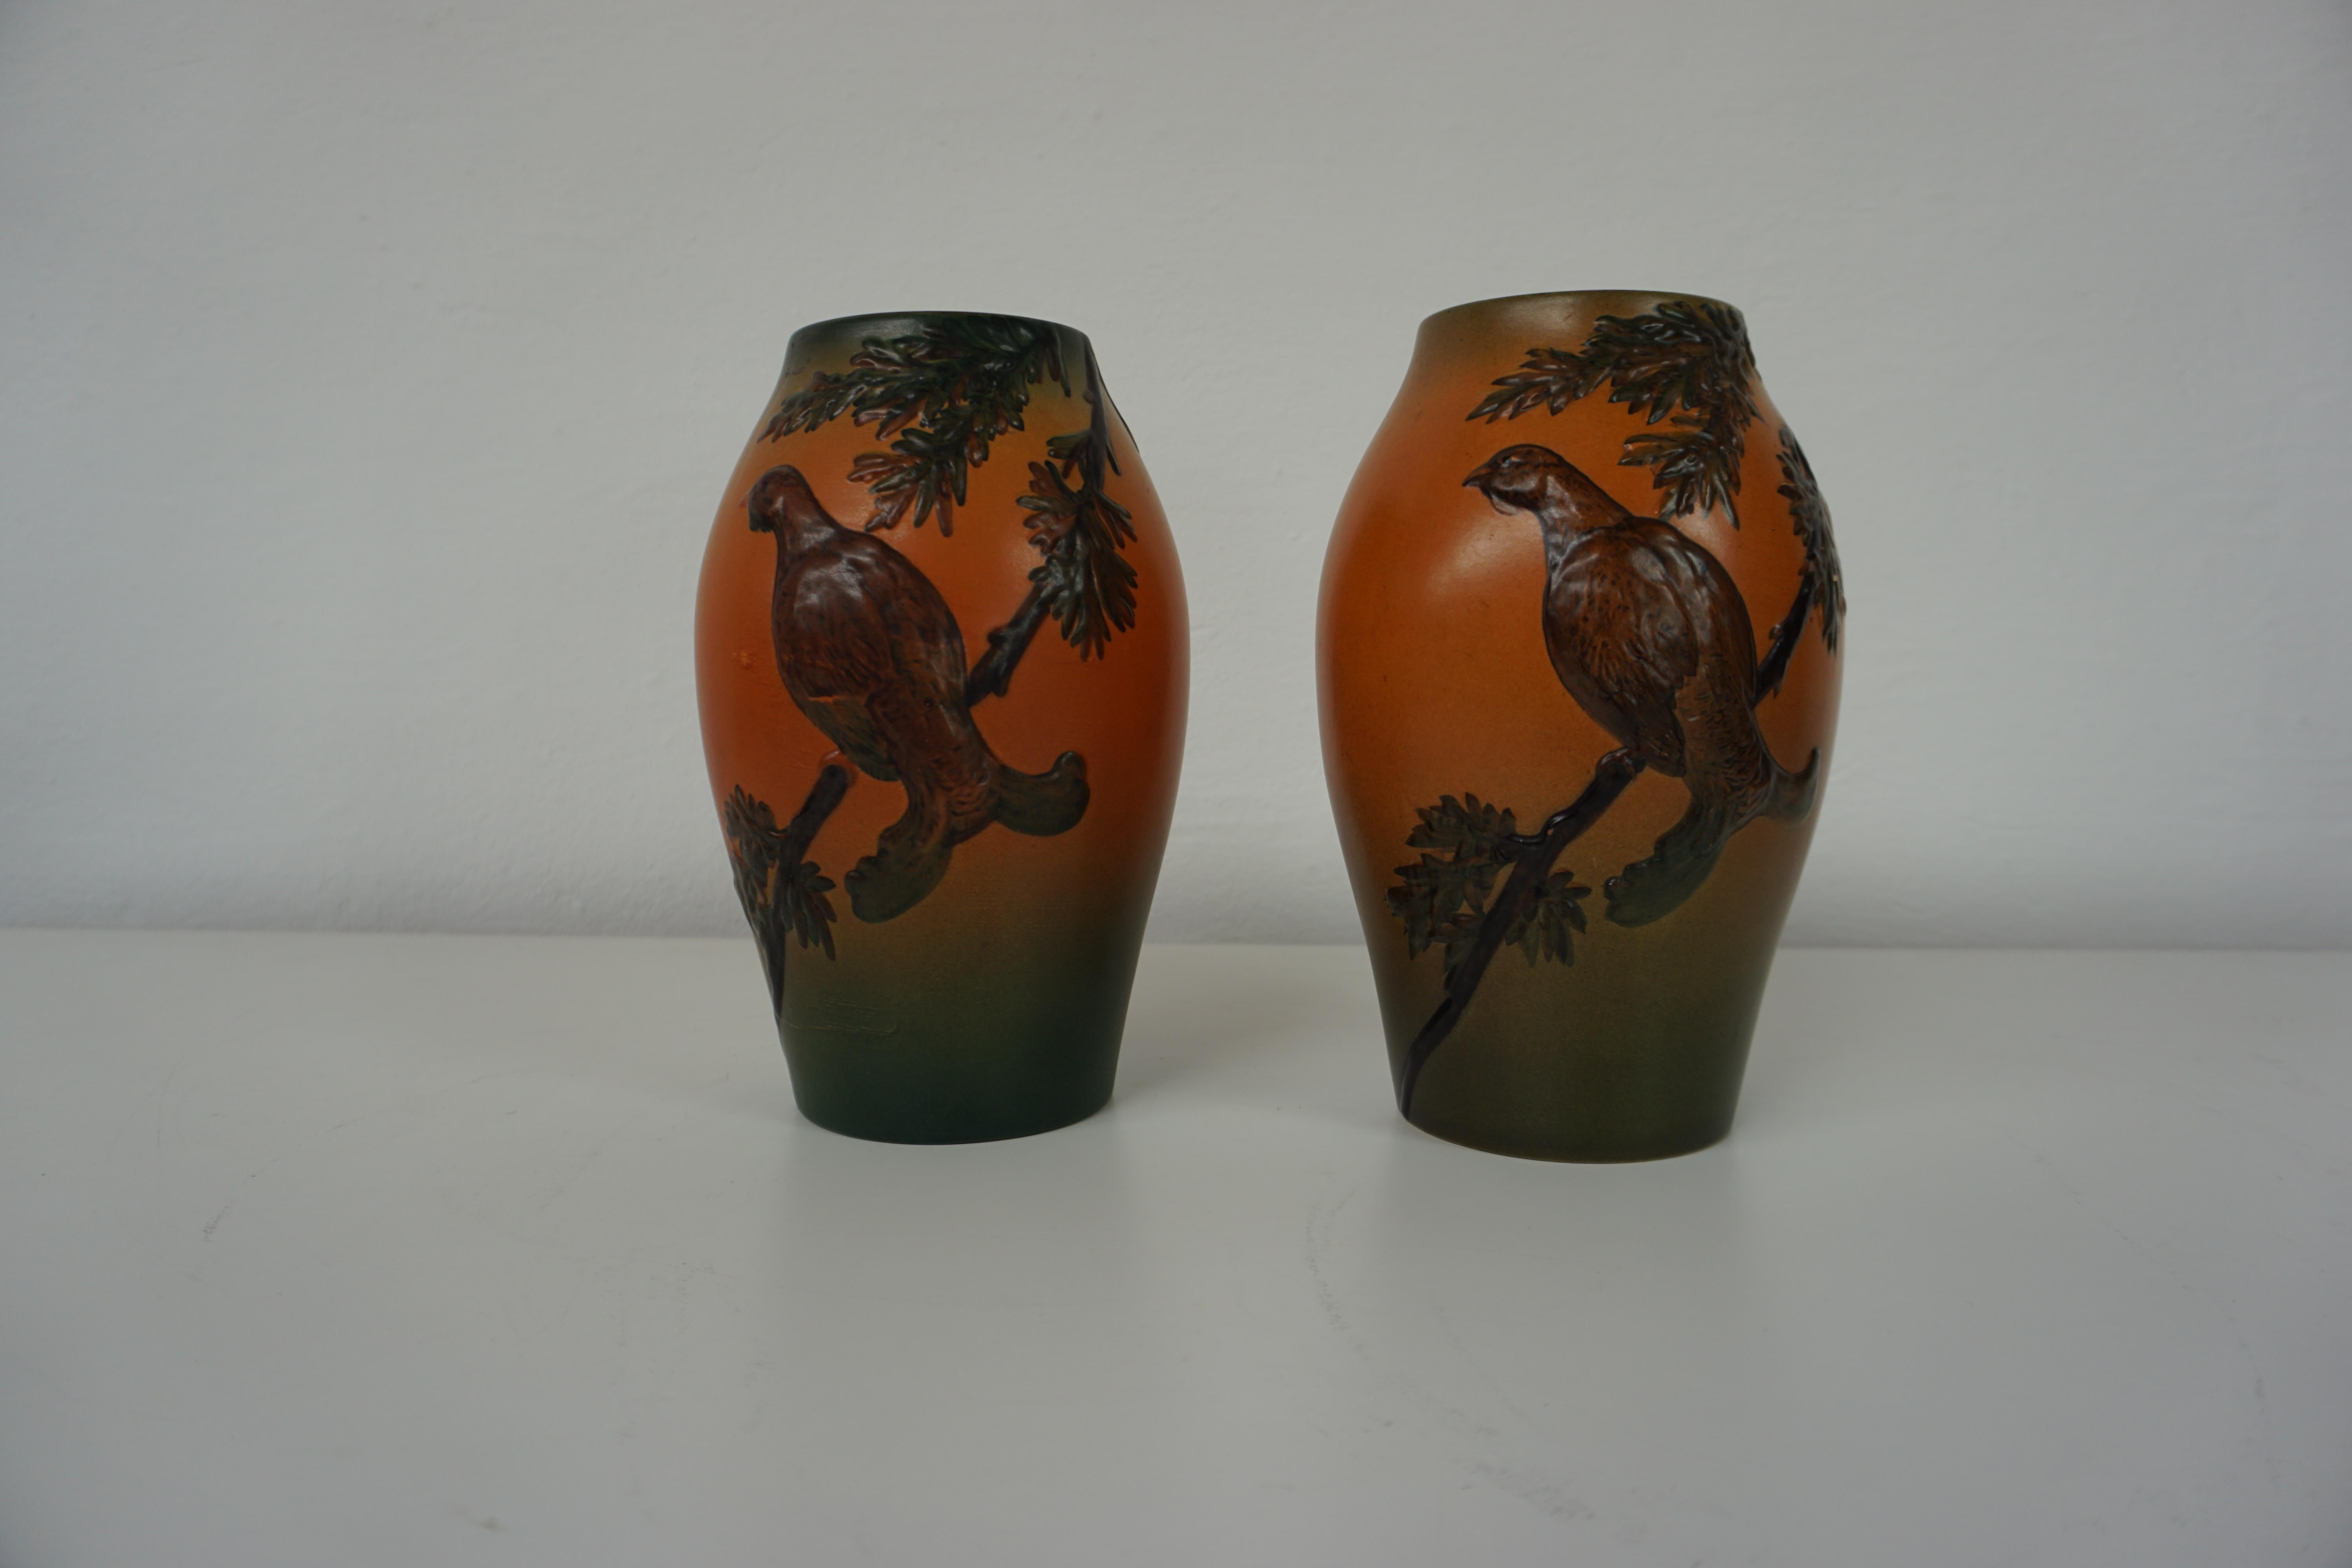 Vases décorés de fleurs, fabriqués à la main par West en 1927 pour P. Ipsen Enke, dans le style Art nouveau danois.

Les vases art nouveau présentent des grouses très noires avec des branches et des feuilles. Ils sont en très bon état.

P. Ipsen